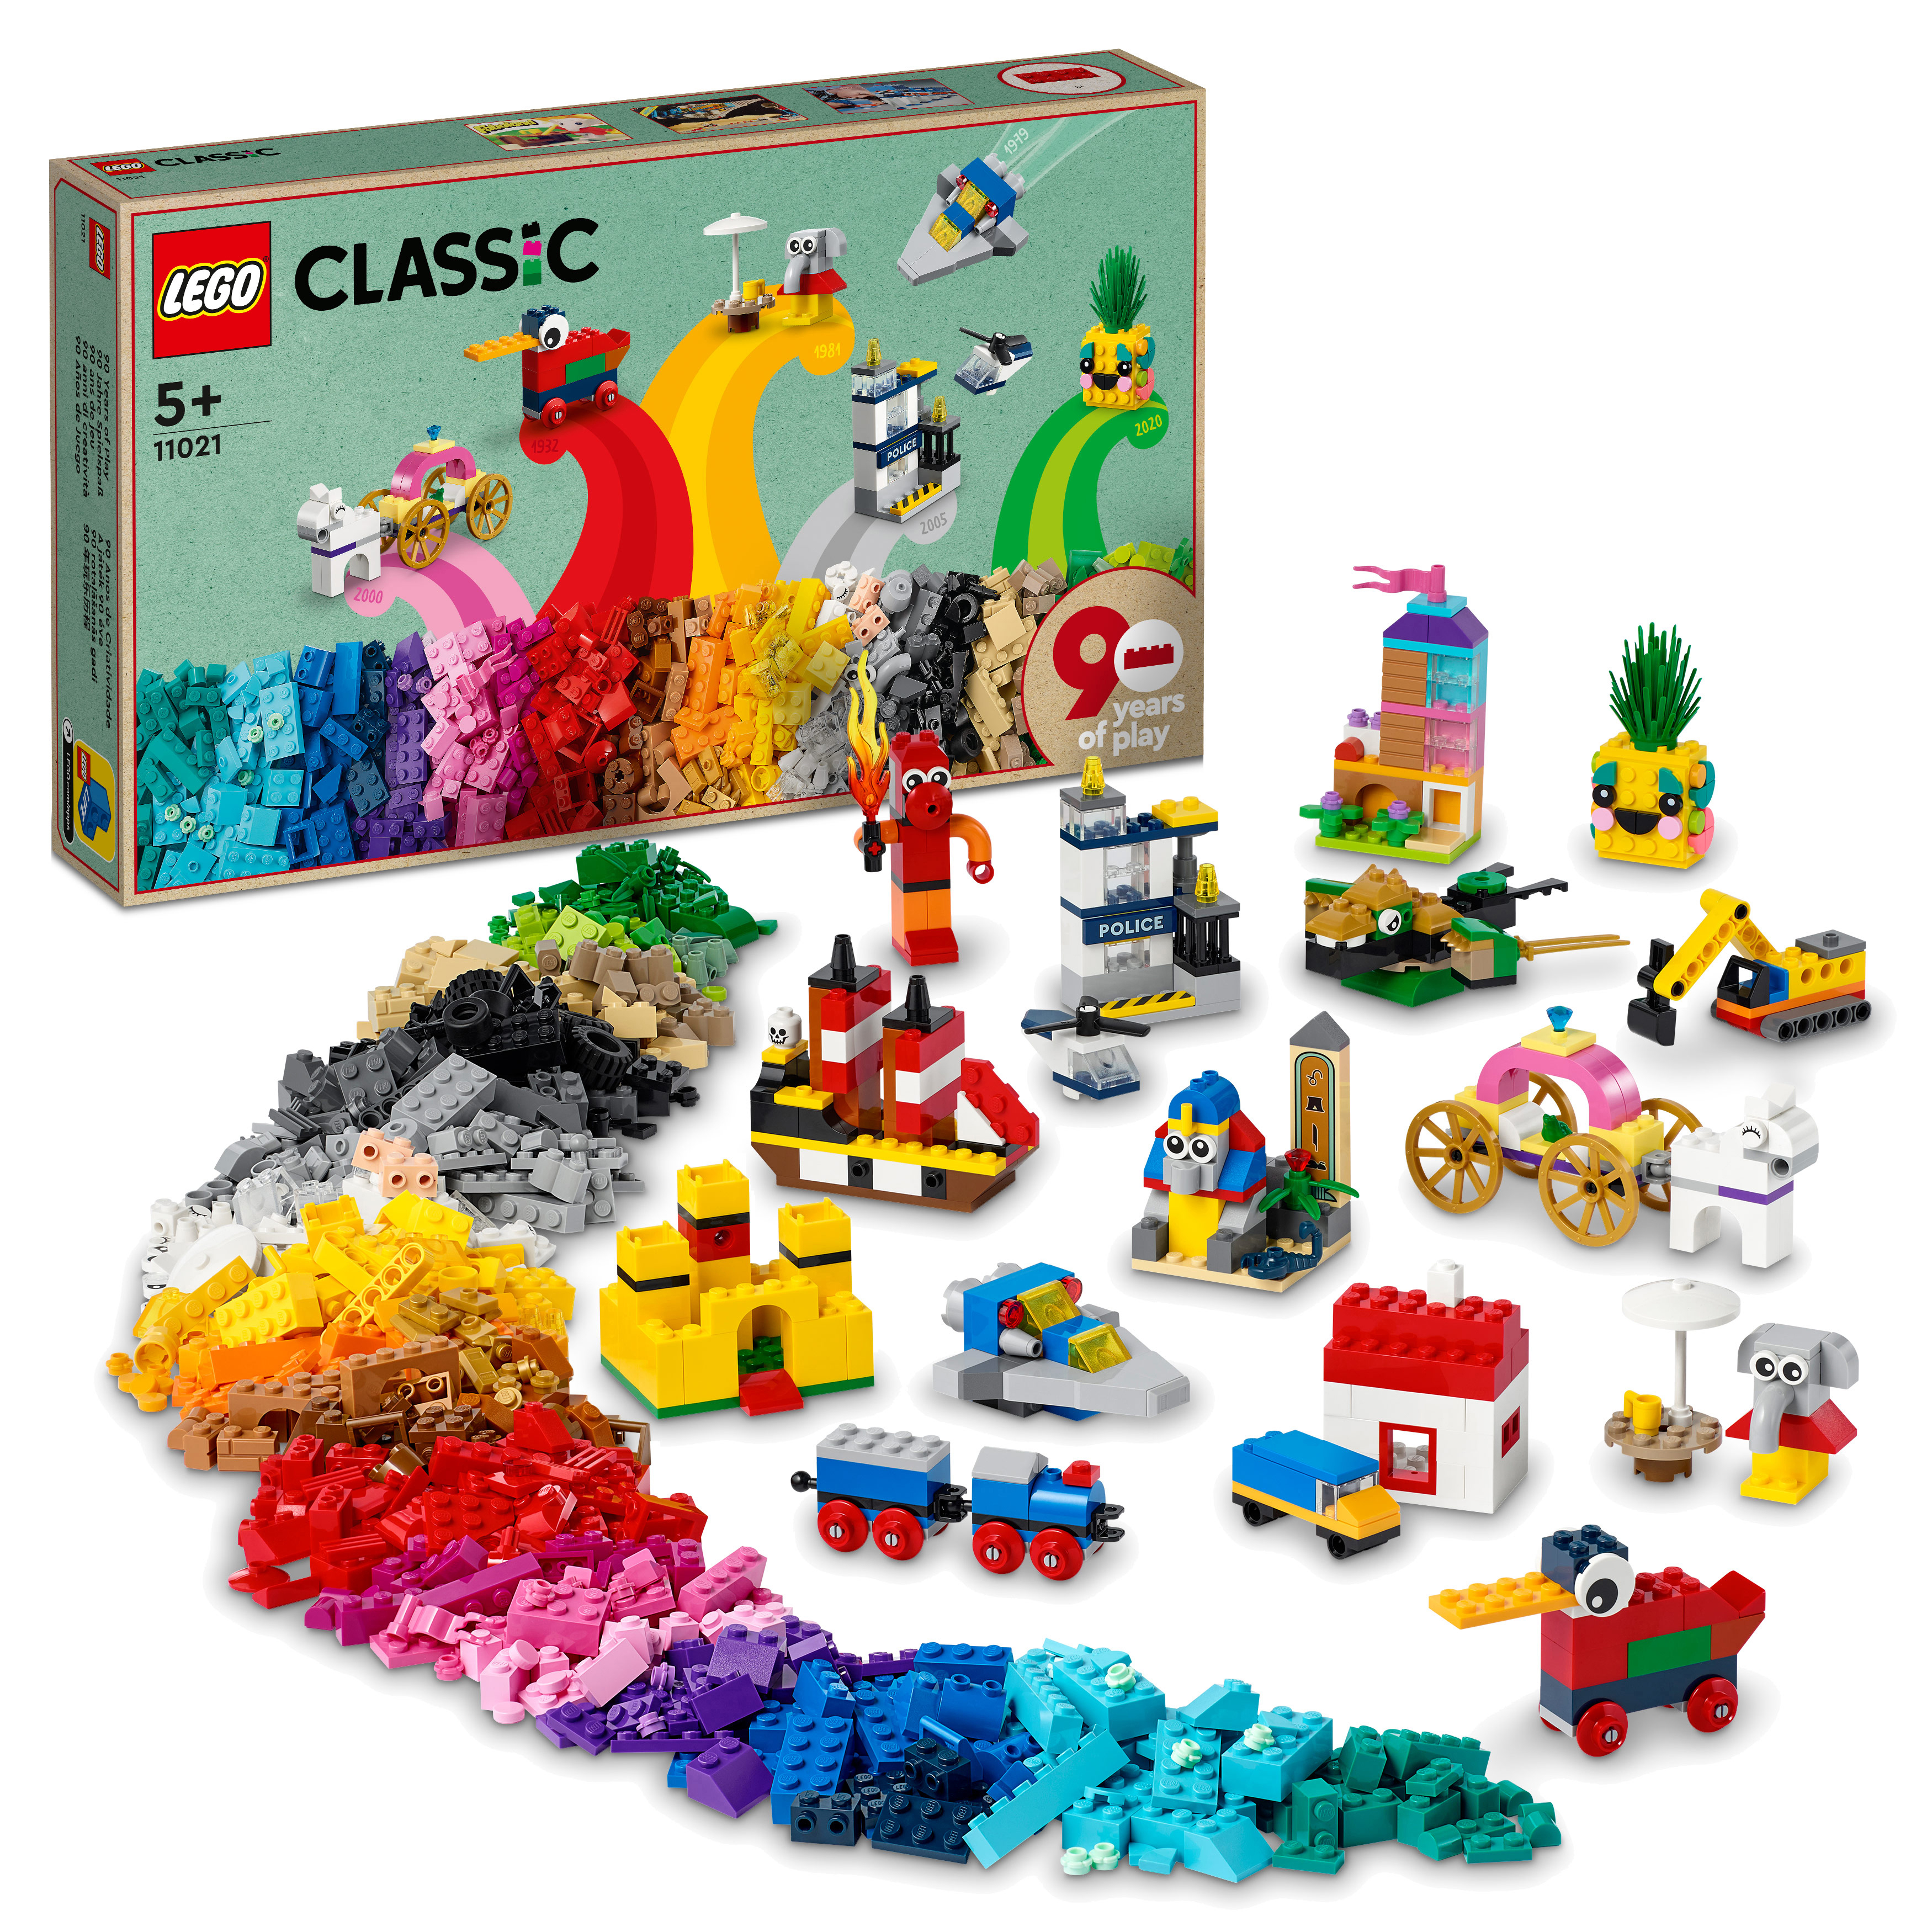 LEGO Classic 11021 90 Jahre Bausatz, Mehrfarbig Spielspaß